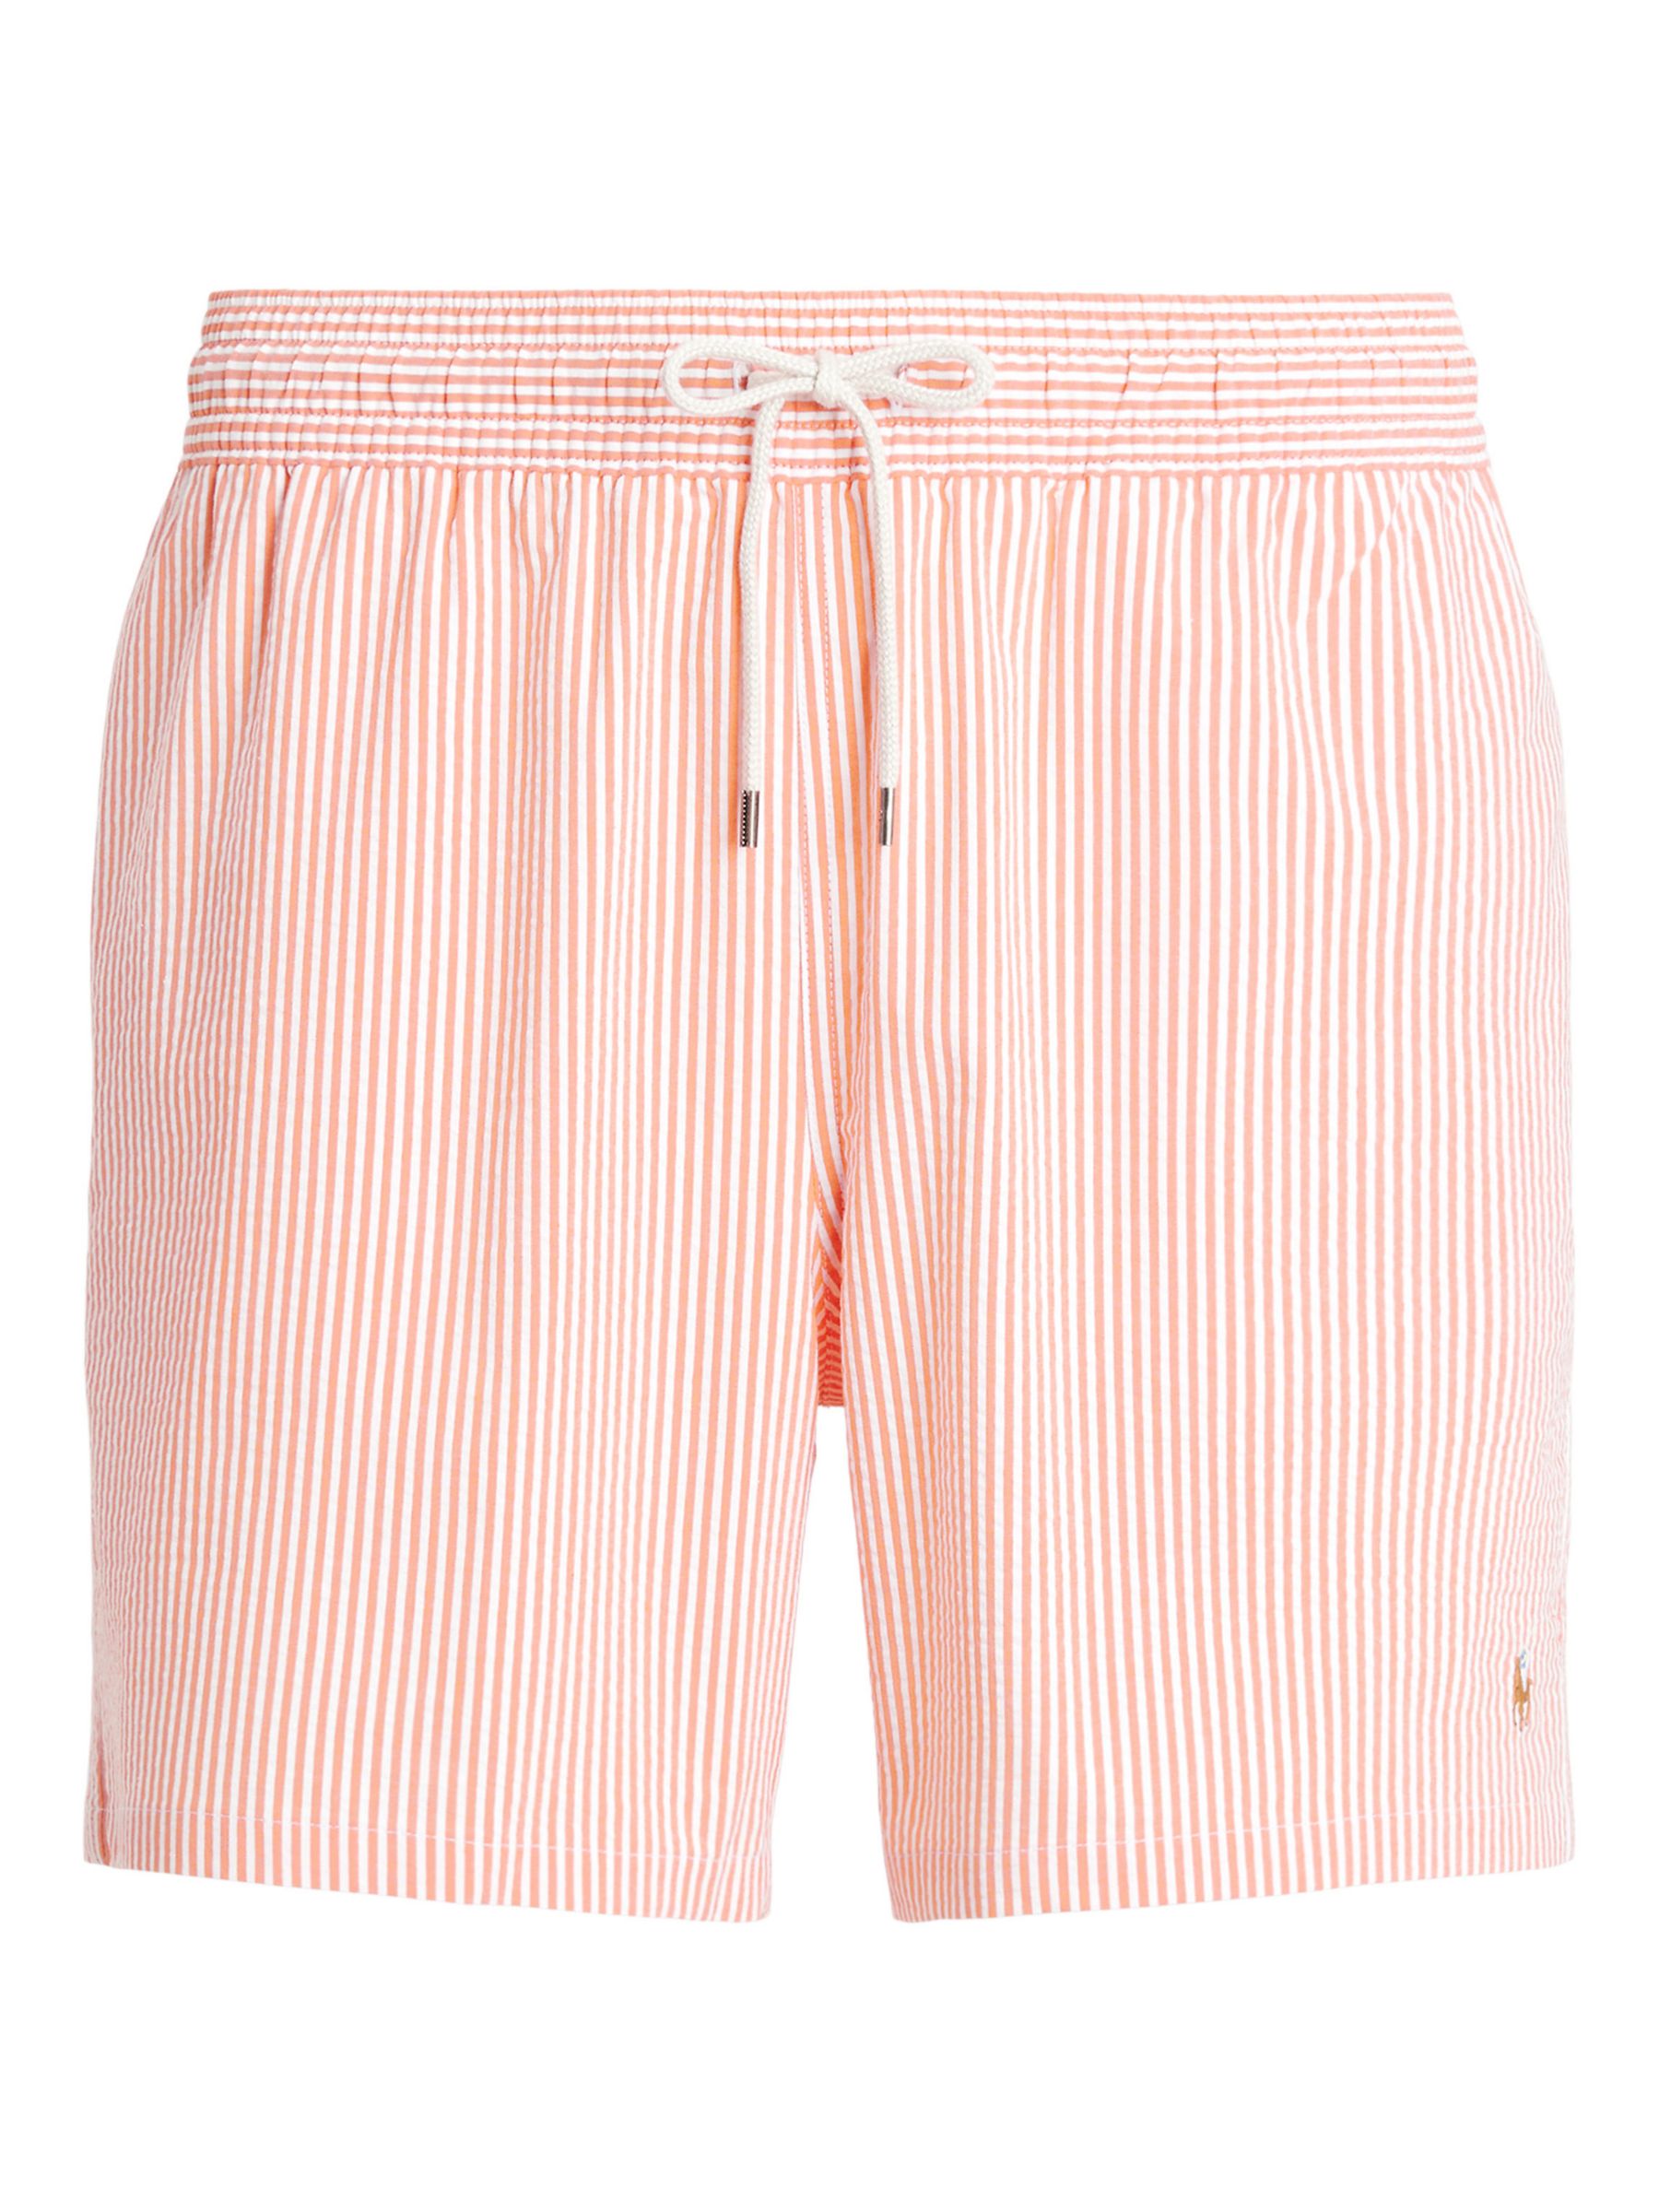 Ralph Lauren Seersucker Mesh Lined Swim Shorts, Orange, XL